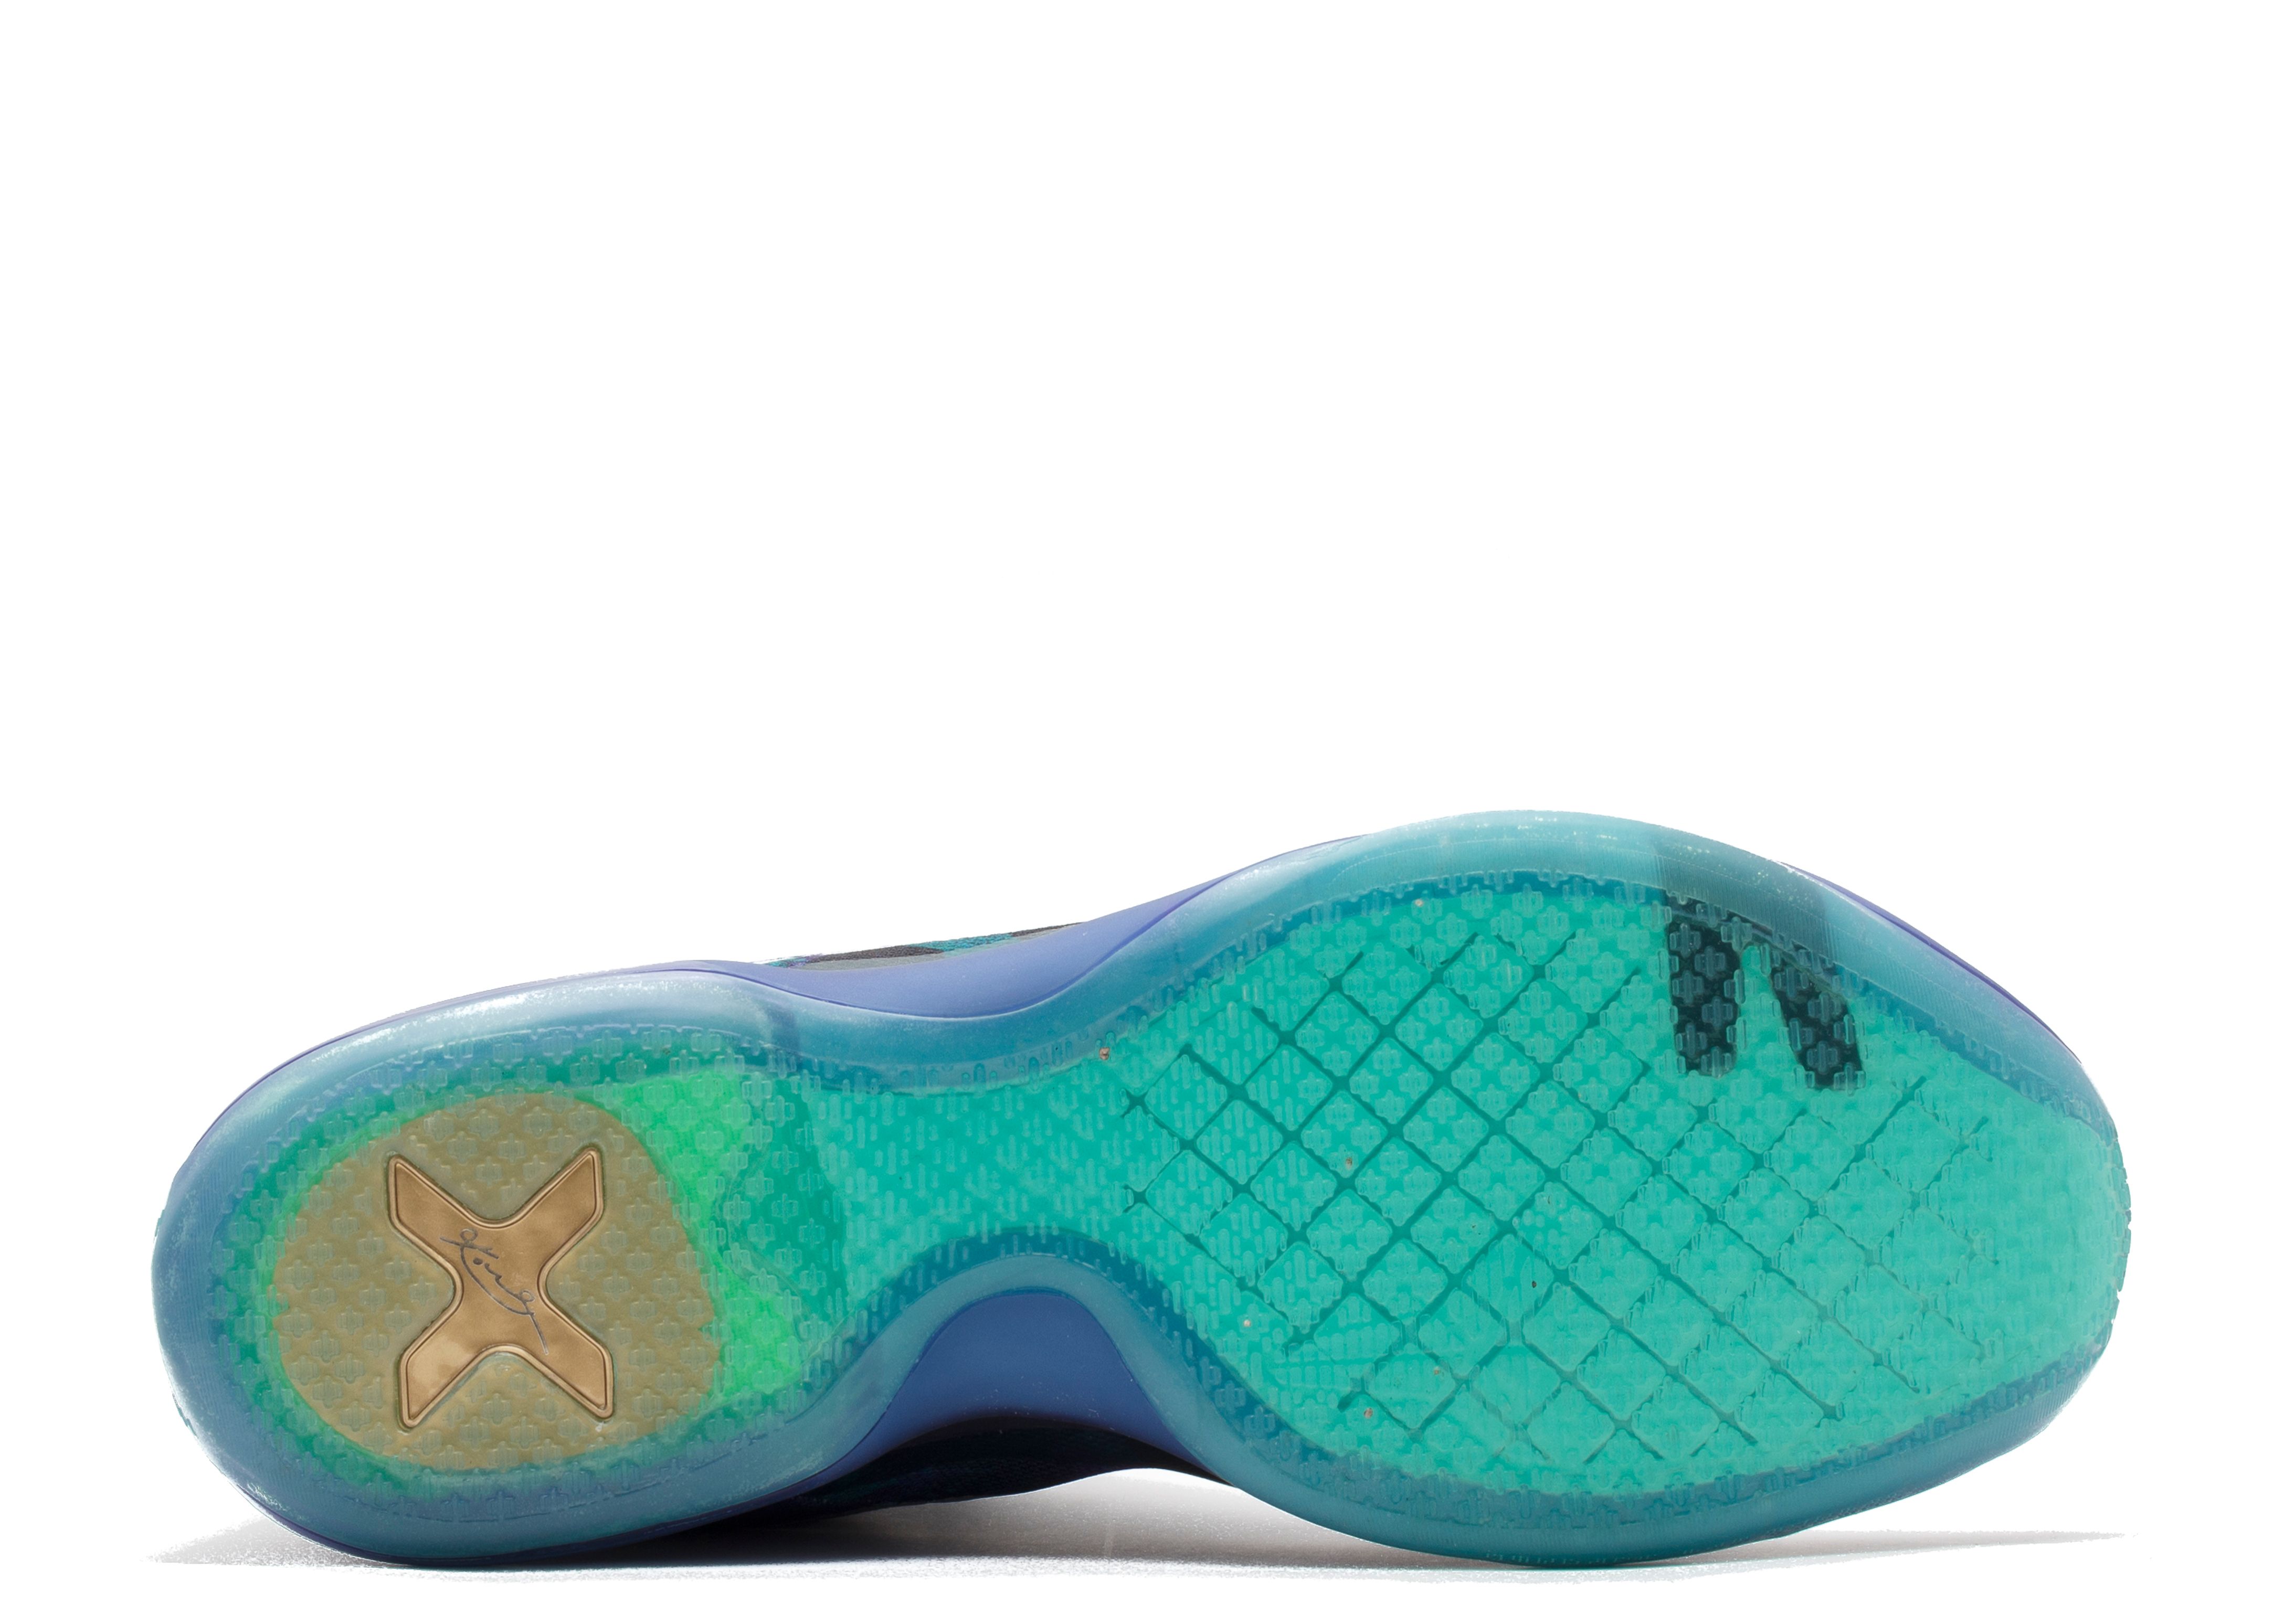 Kobe 10 'Overcome' - Nike - 705317 305 - emerald glow/reflect